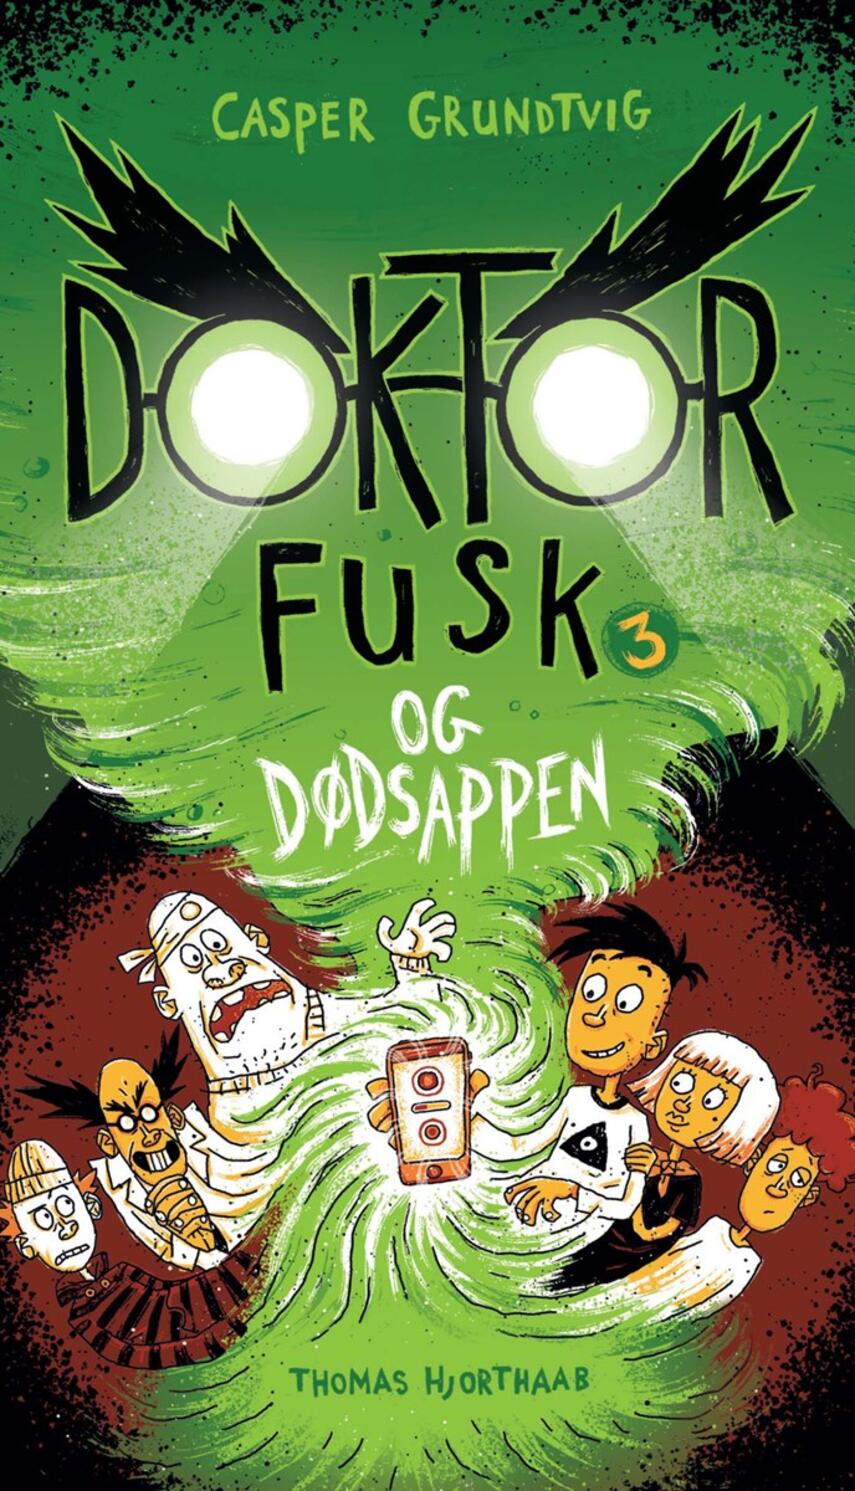 Casper Grundtvig: Doktor Fusk og dødsappen